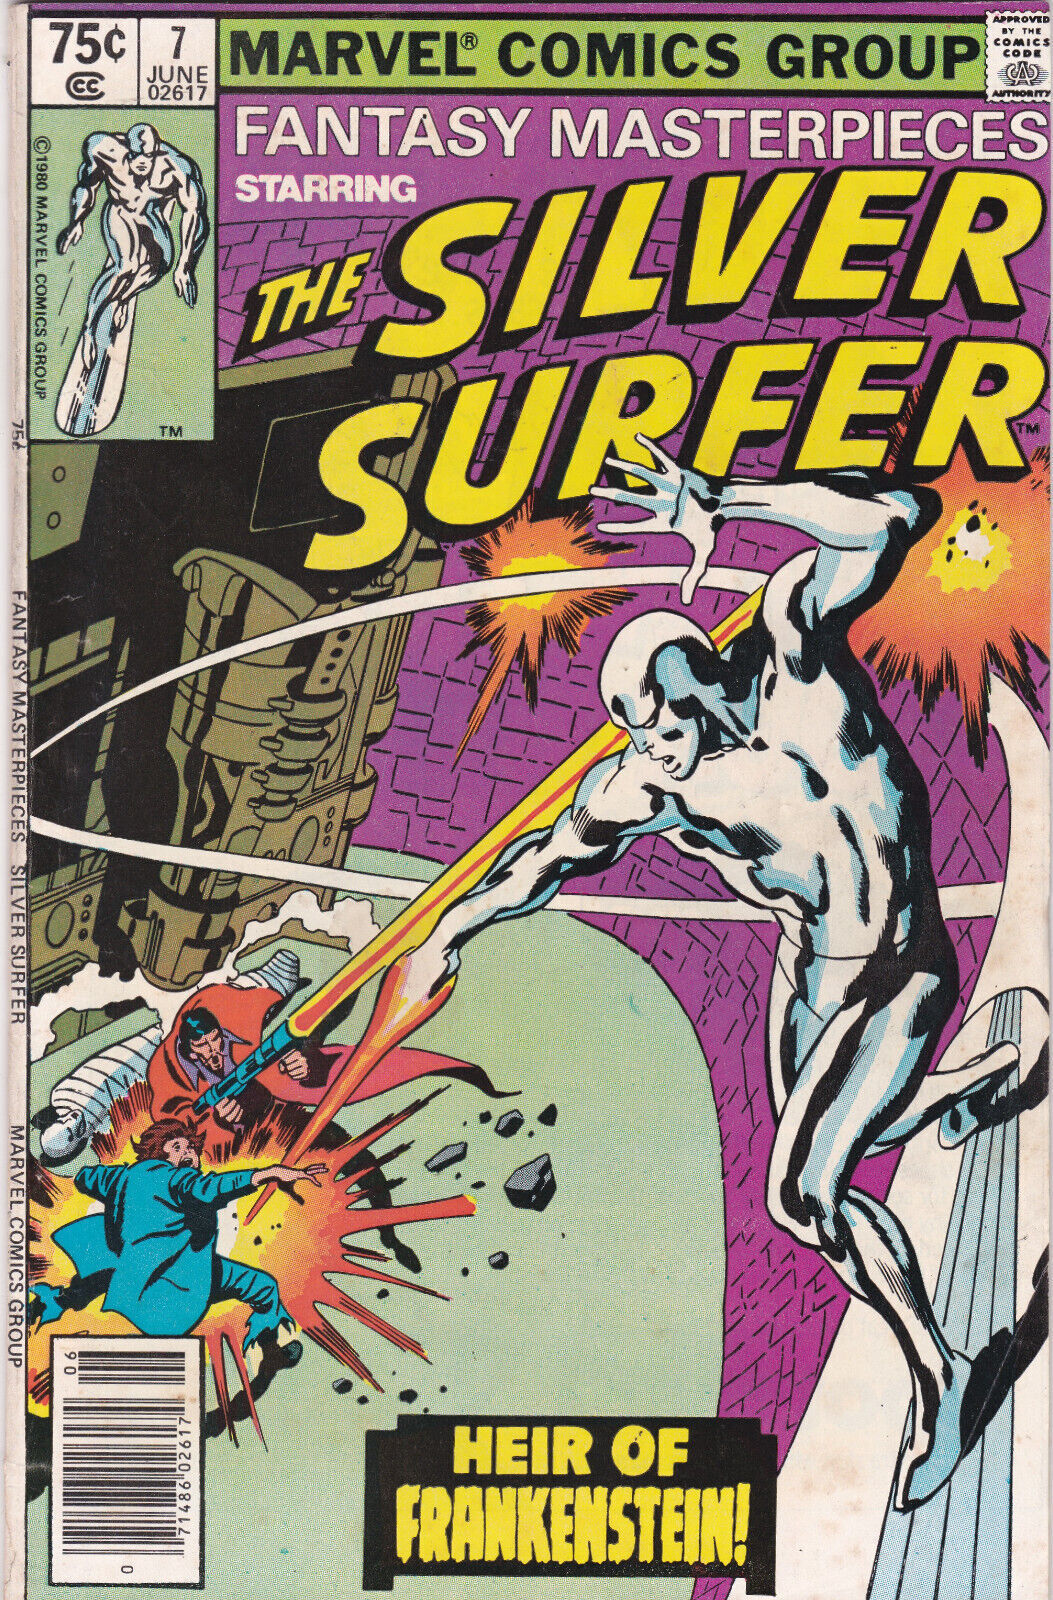 Fantasy Masterpieces #7 Vol. 2 (Marvel, 1980) Silver Surfer